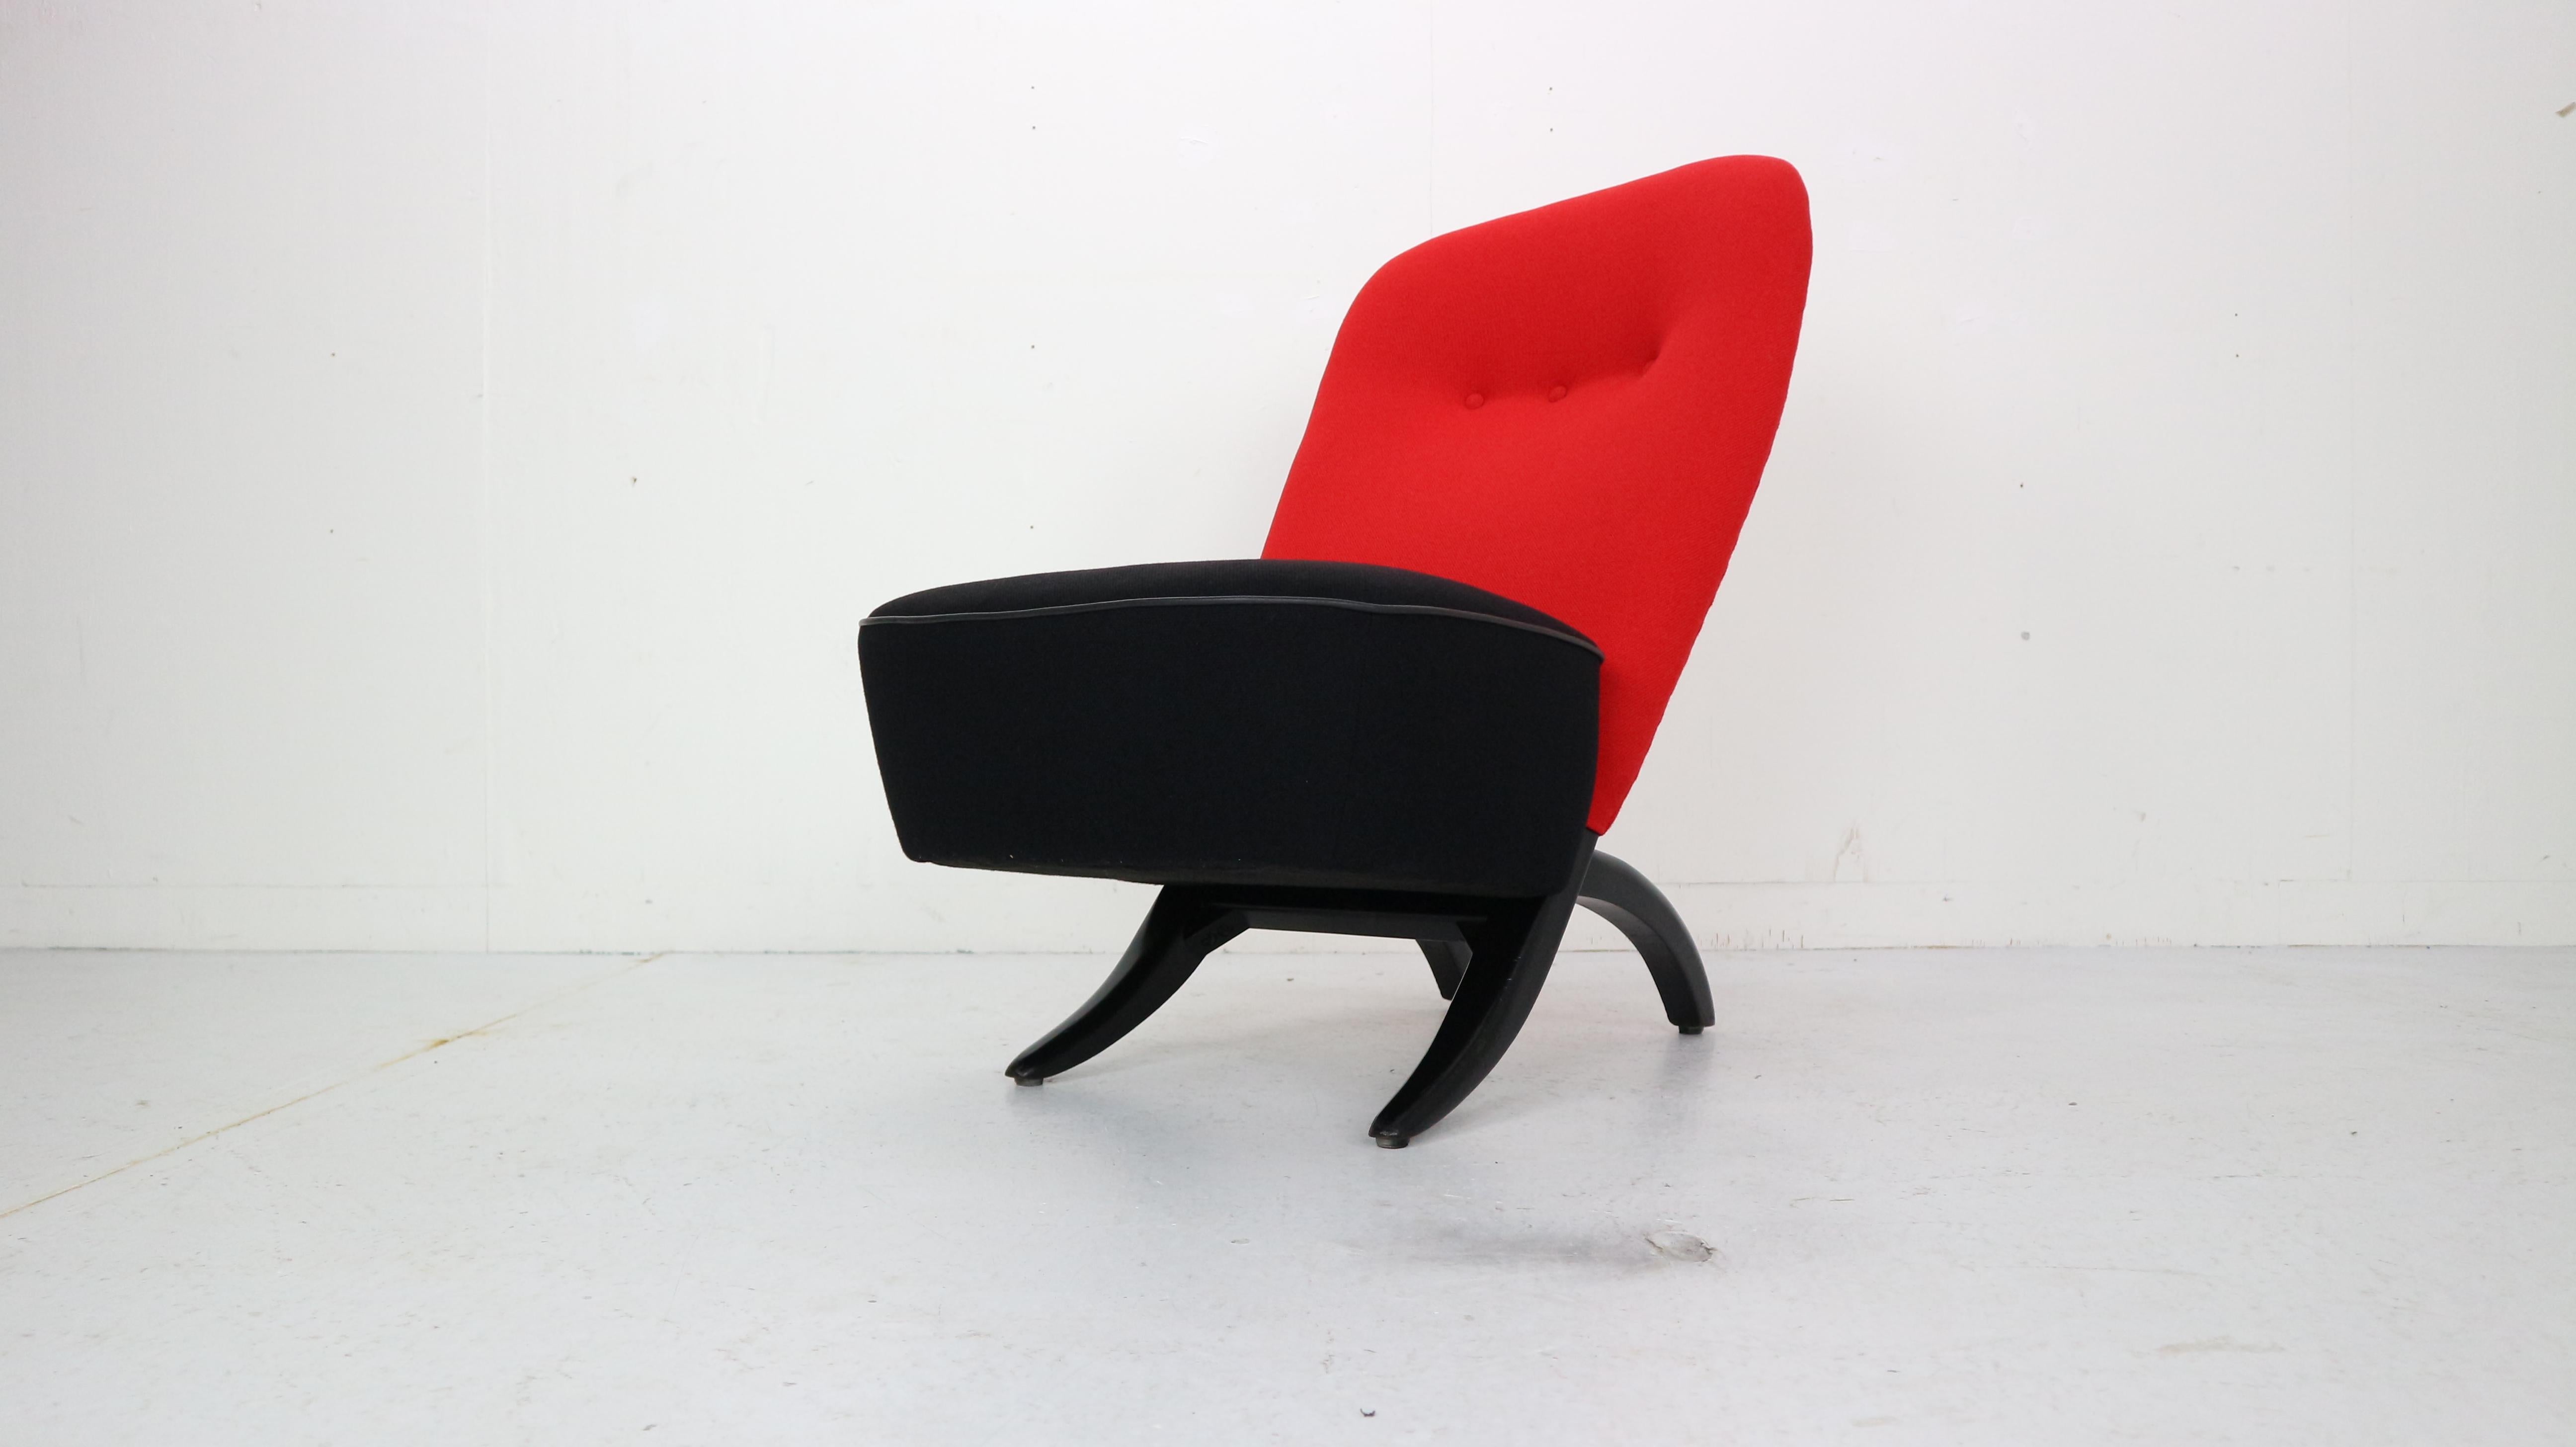 Unique Dutch design construction chair named 